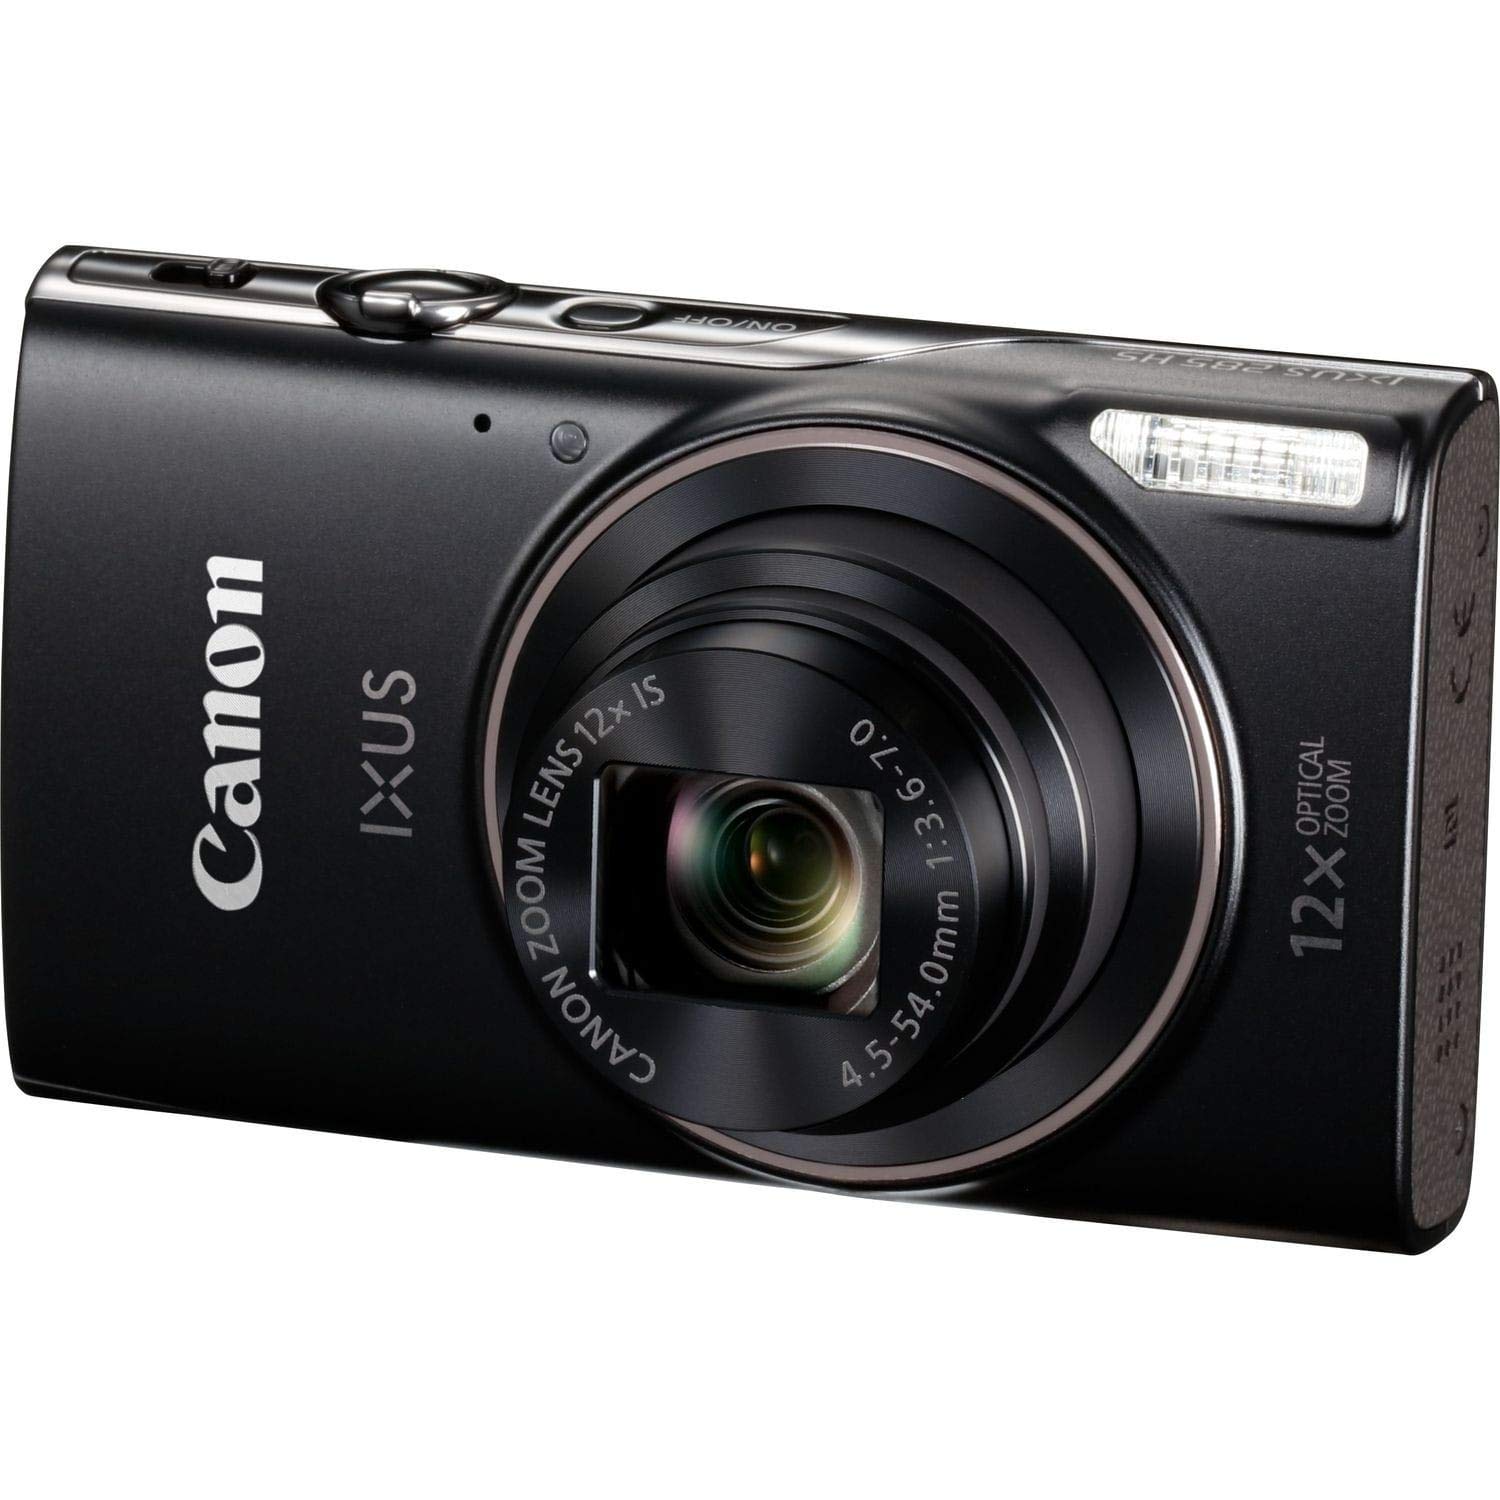 Canon イクサス 285 HS ブラック 1076C001 (インターナショナルモデル)